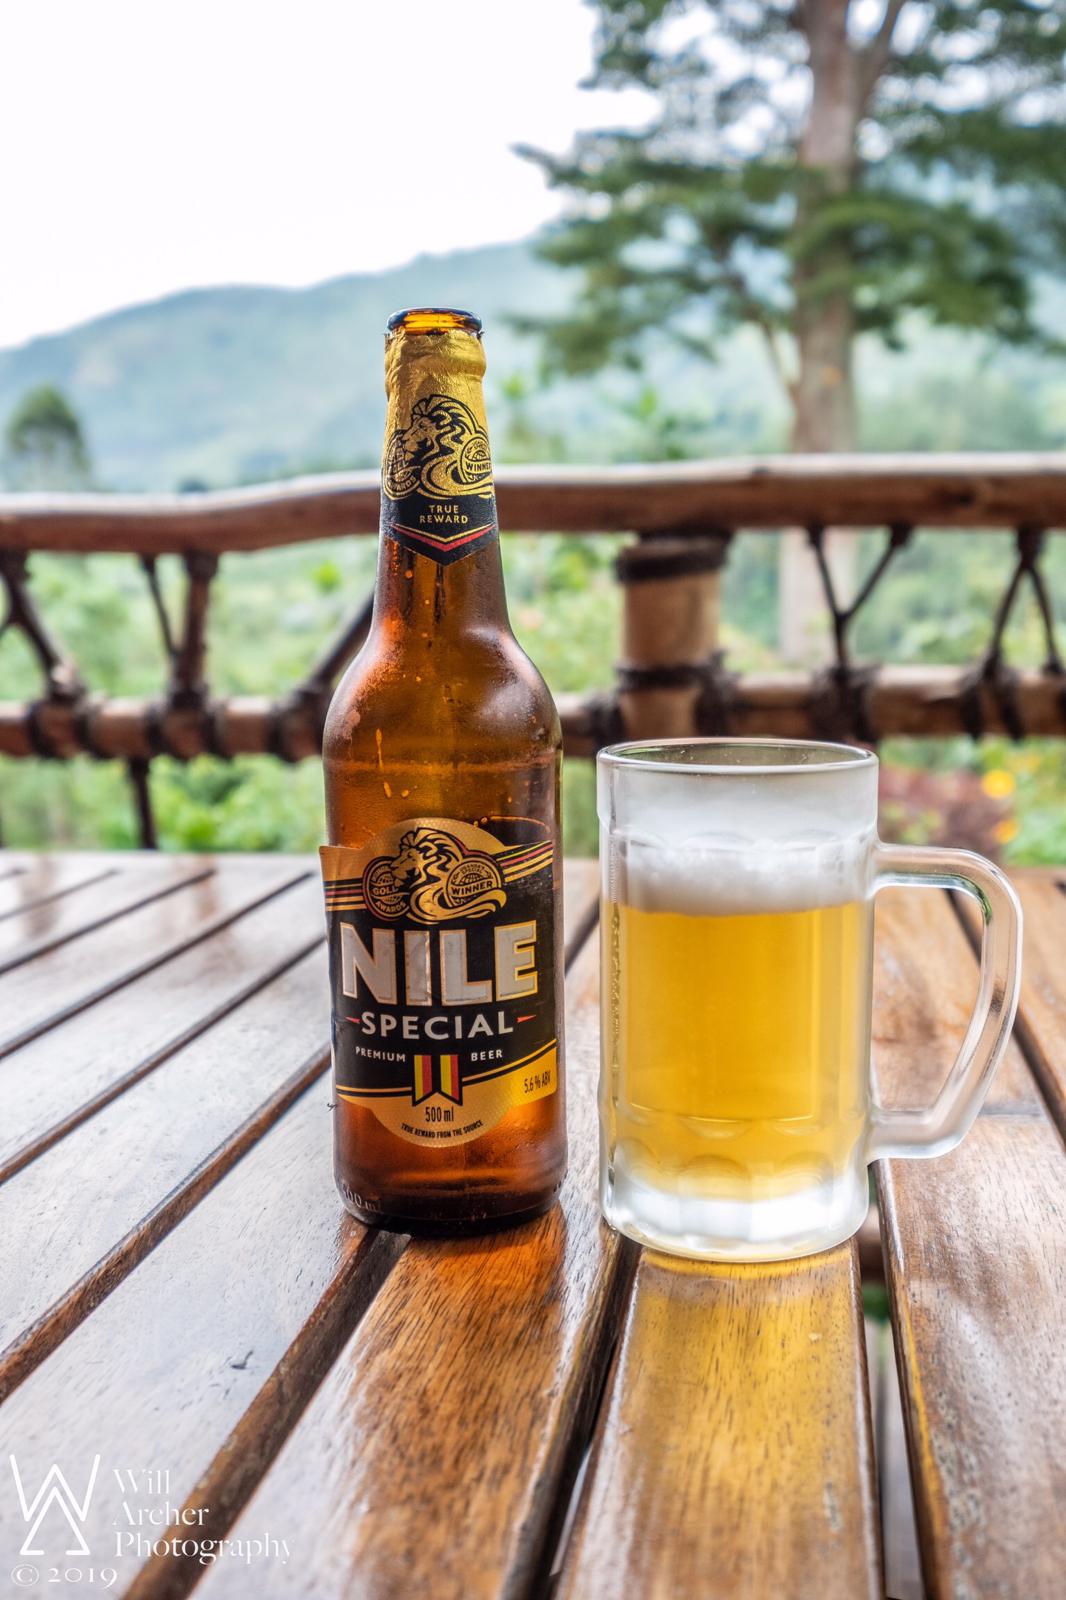 Nile Special Premium Lager